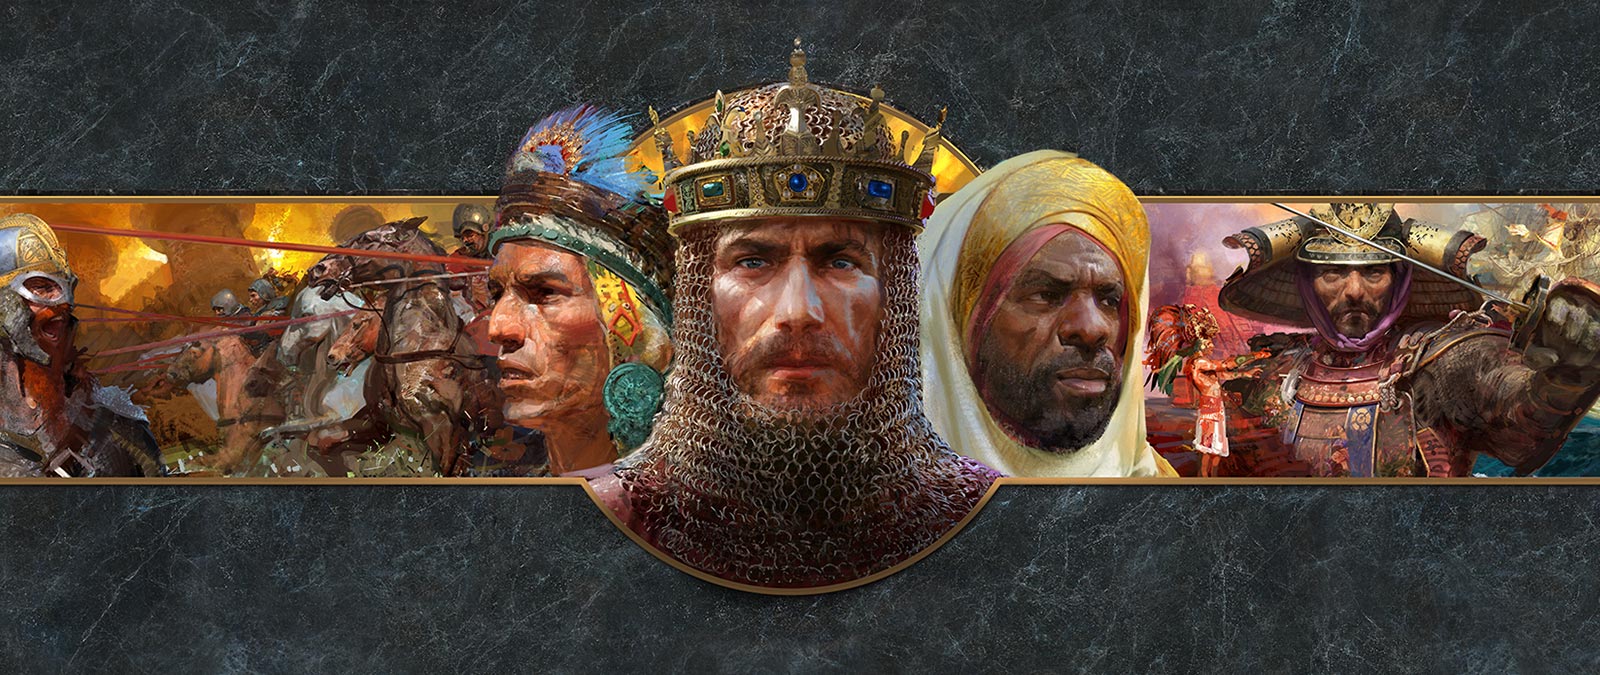 Les visages de dirigeants de plusieurs civilisations sont visibles devant des scènes de bataille.